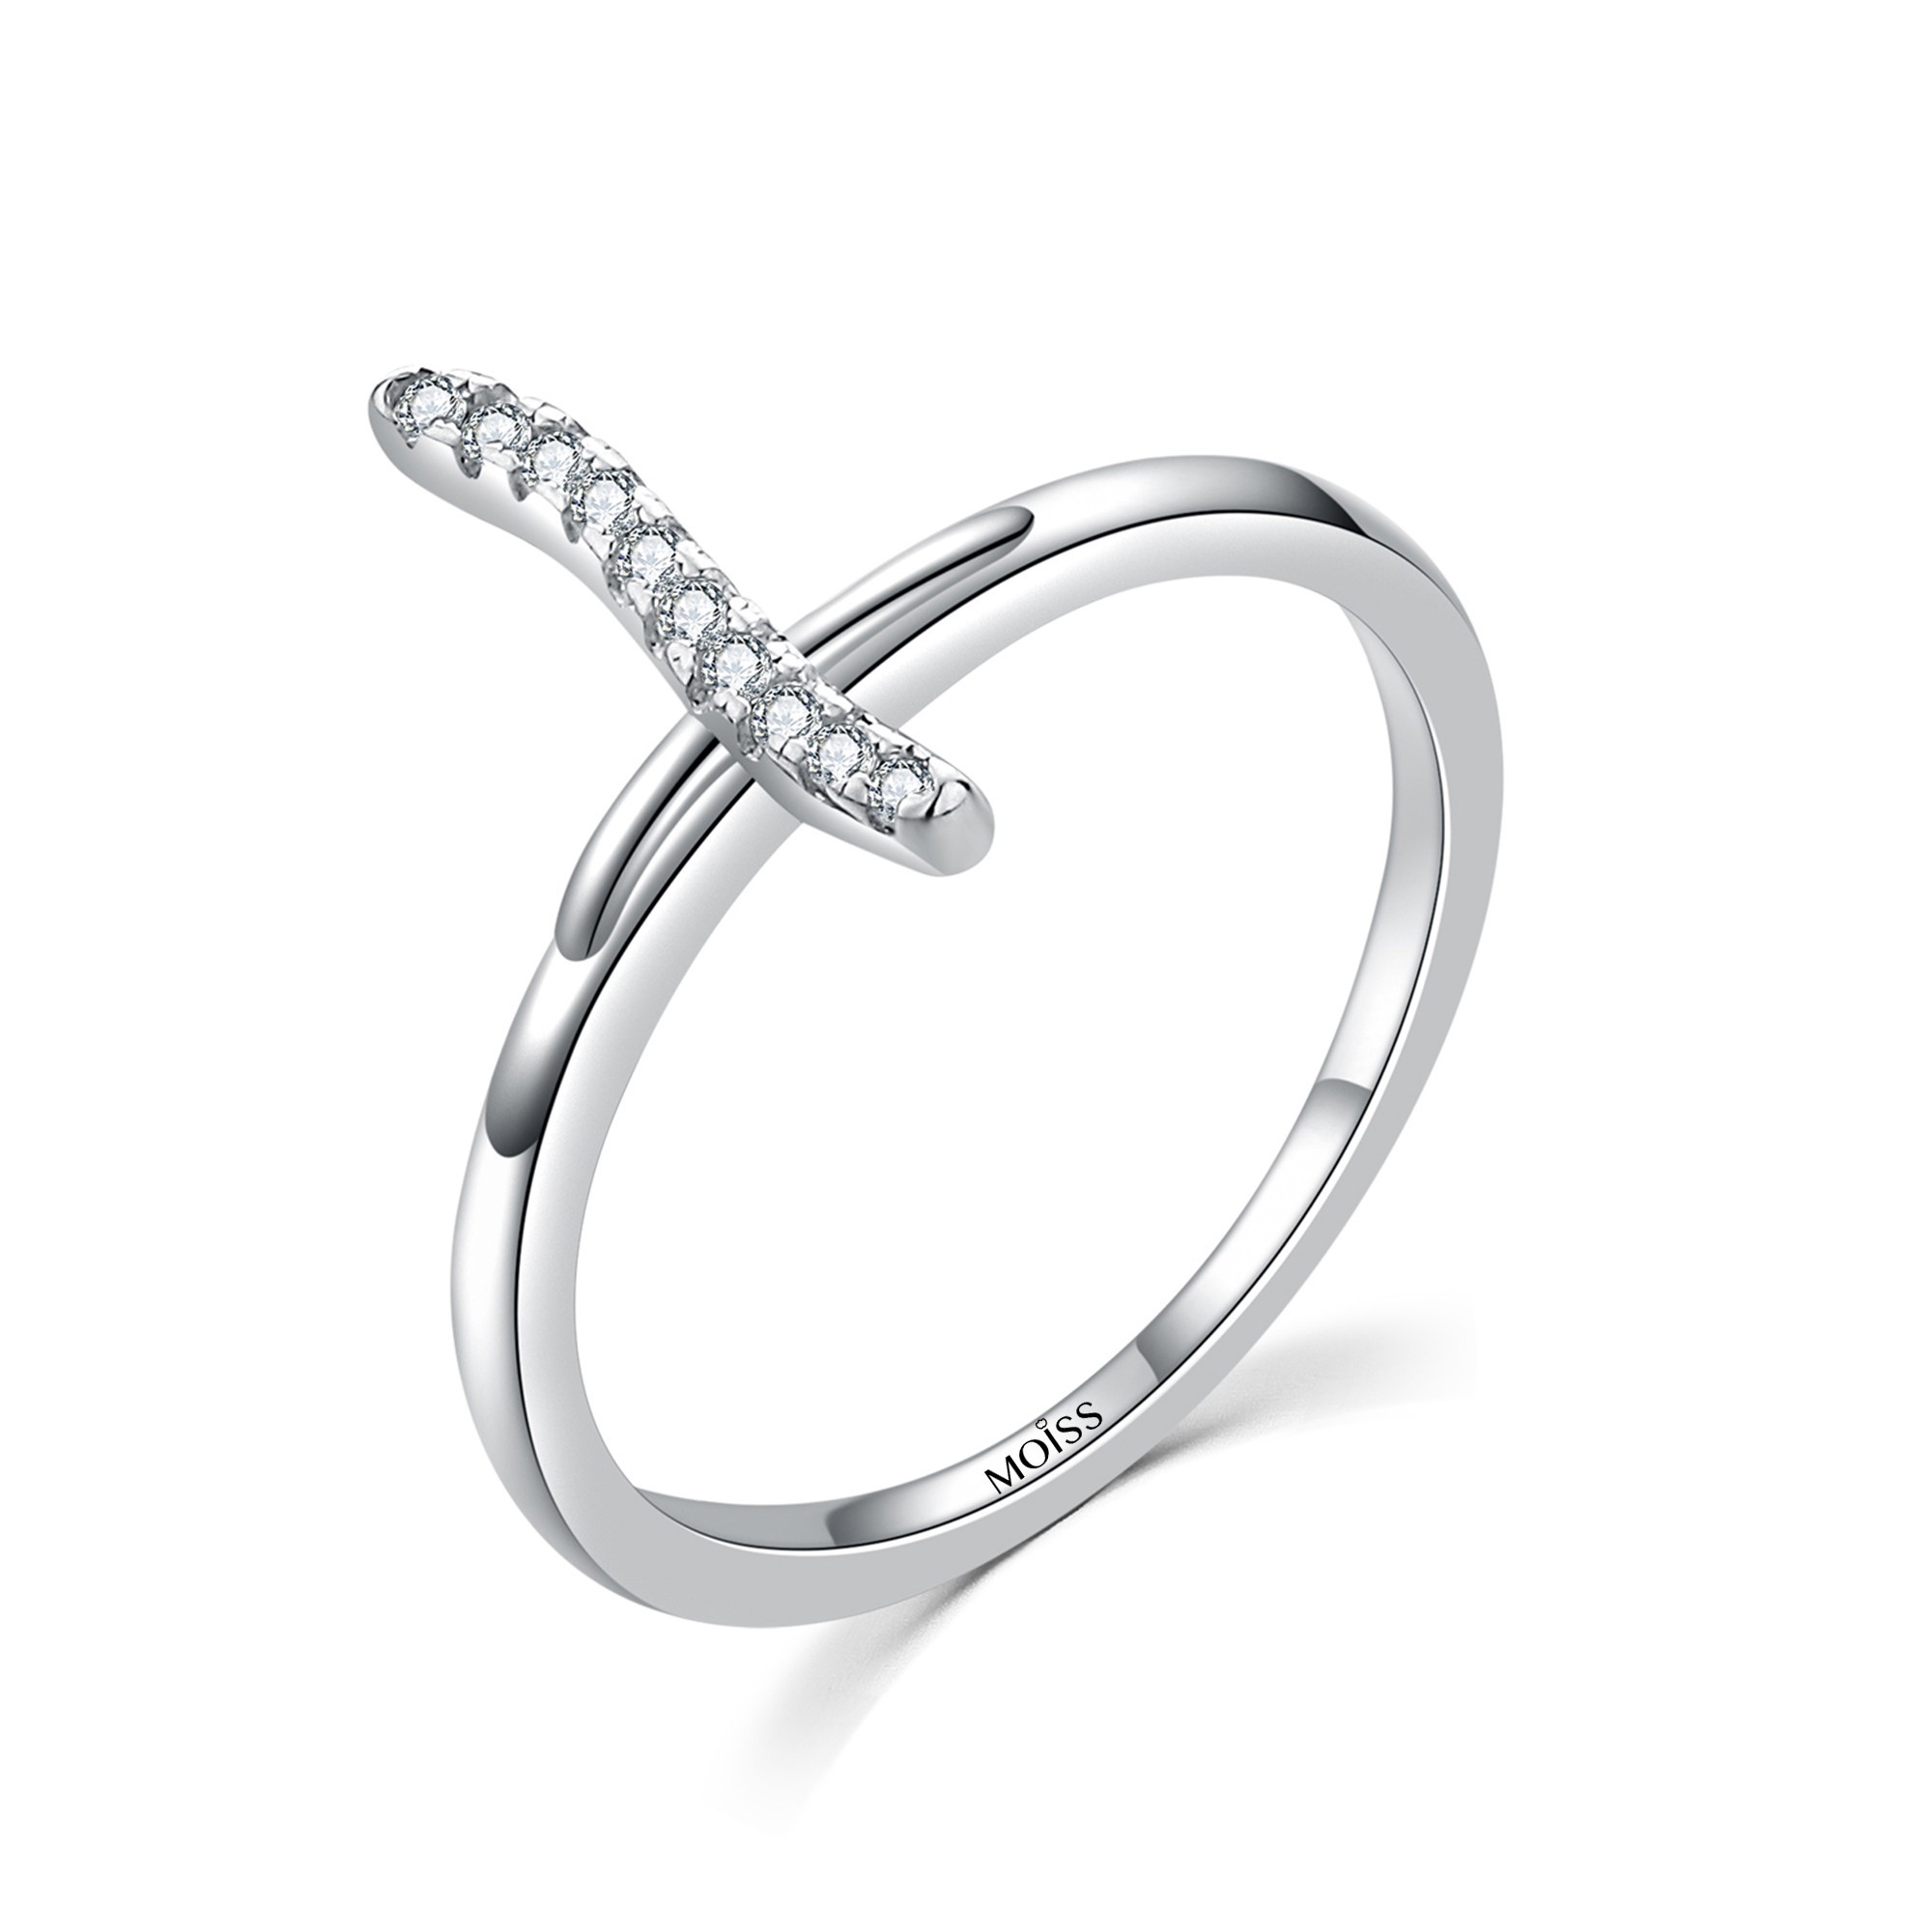 MOISS Moiss stříbrný prsten s bílým zirkonem KŘÍZEK R0001889 Velikost 52 mm R0001890